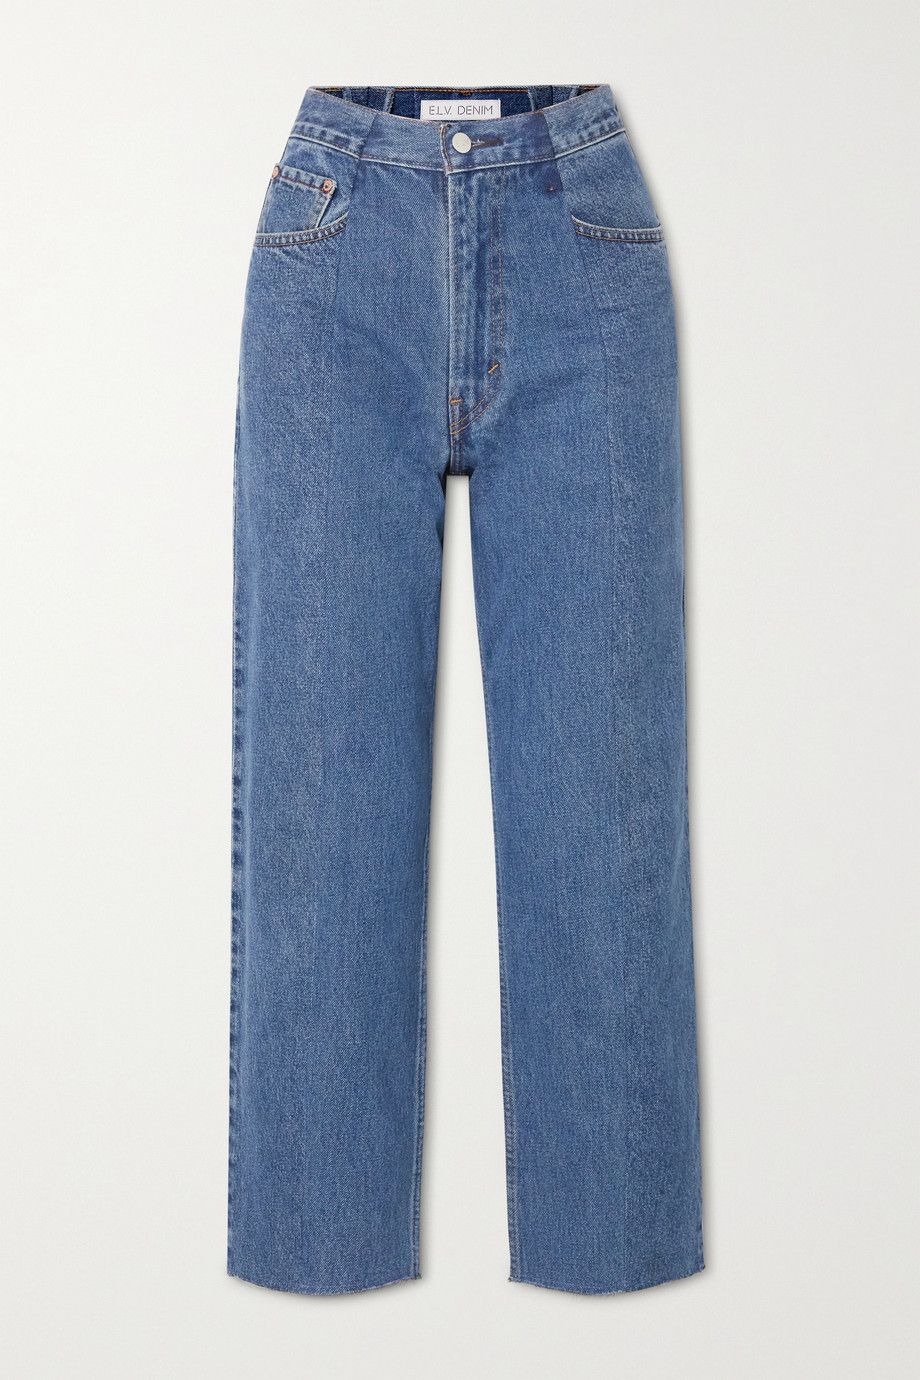 high waisted jeans short length